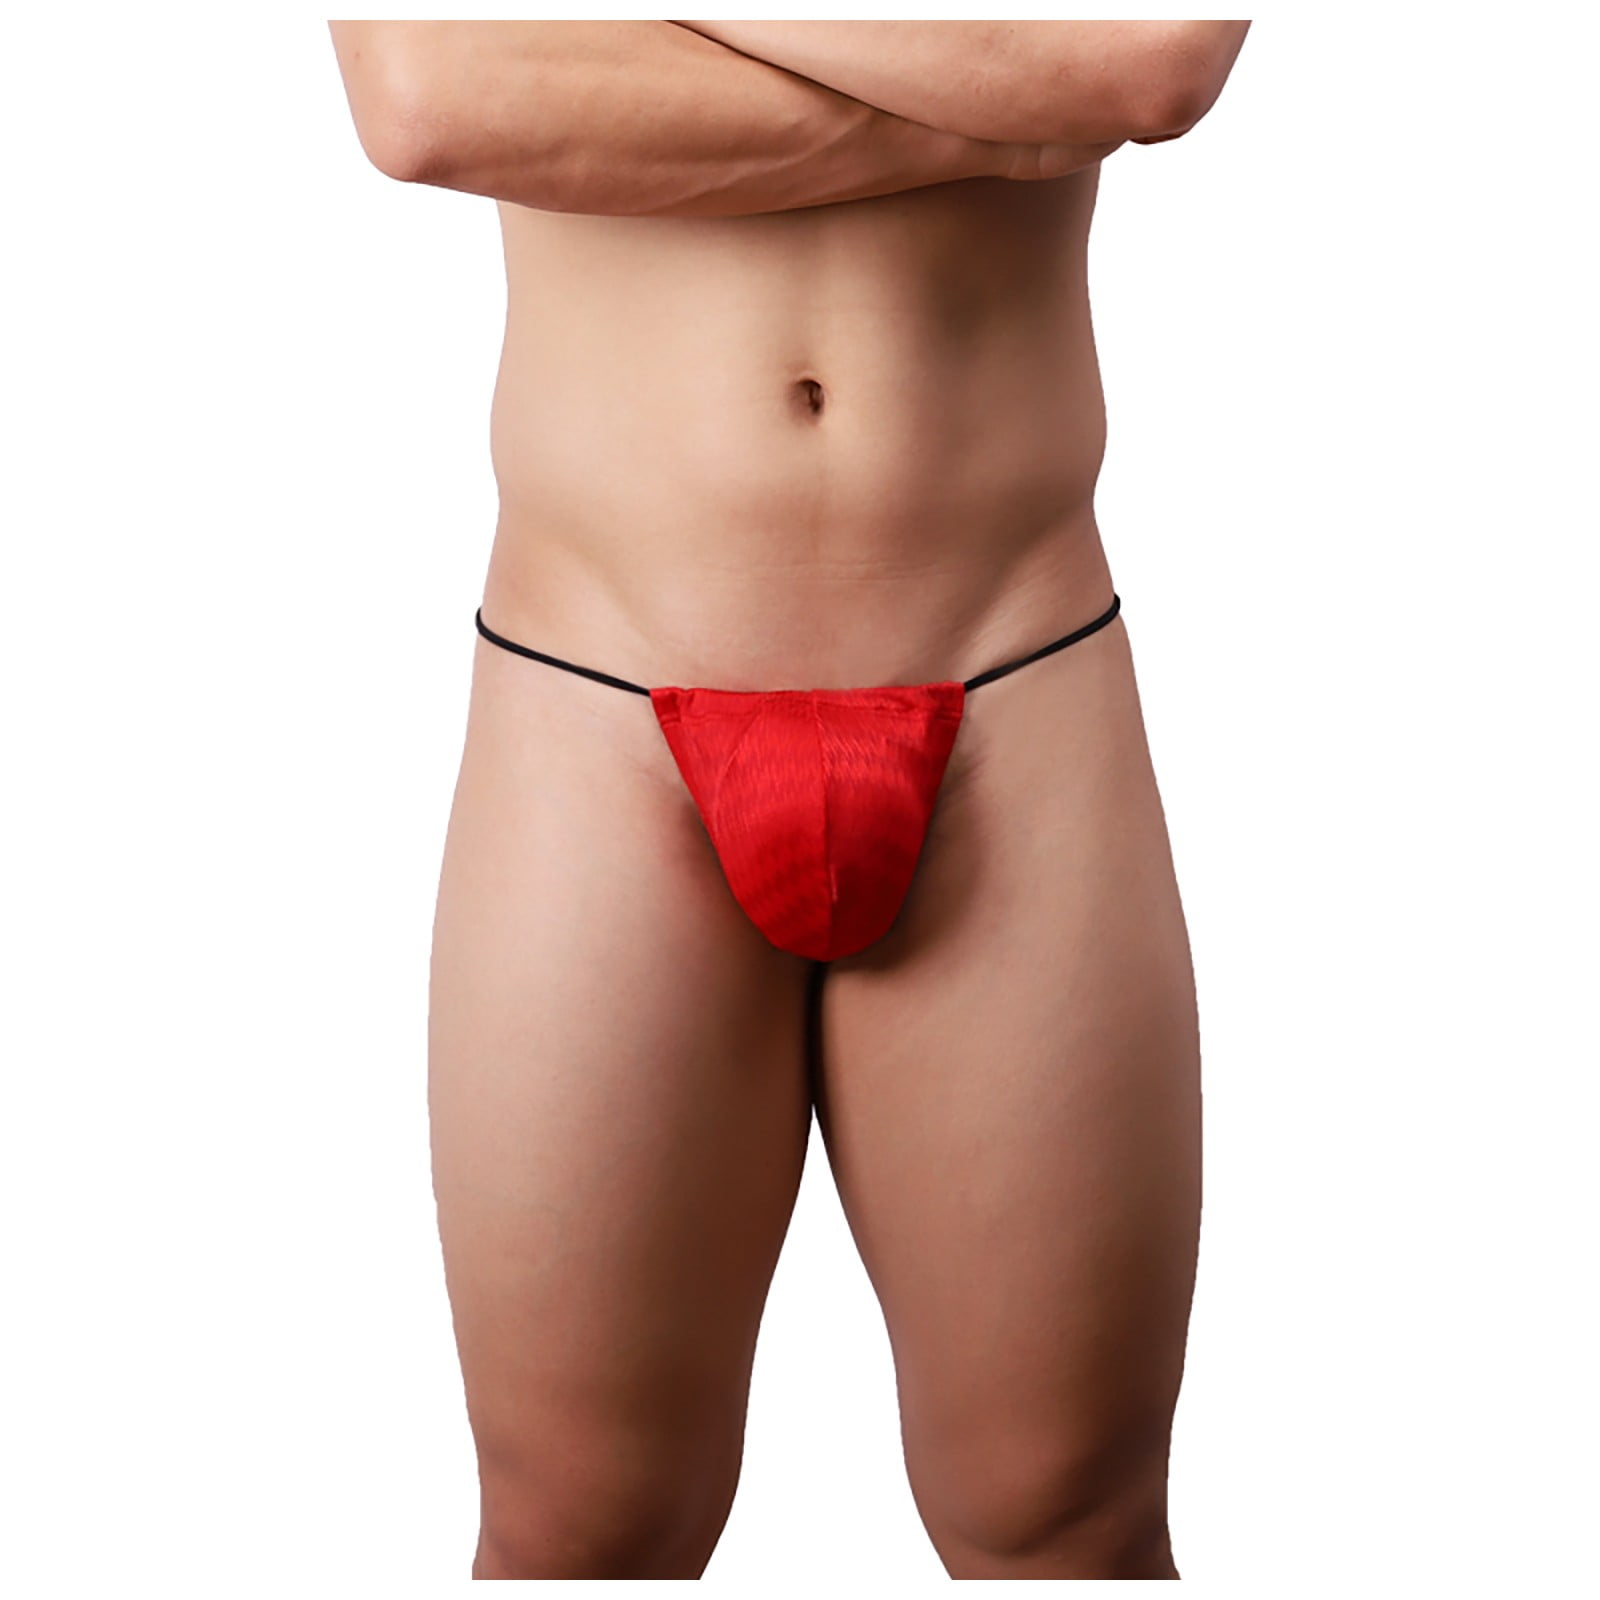 Aayomet Mens Underwear Boxer Briefs Mens Enhancing Briefs Underwear Men Low  Rise Ice Silk Lightweight Stretch Smooth Comfy Tagless Undies,Red XL 